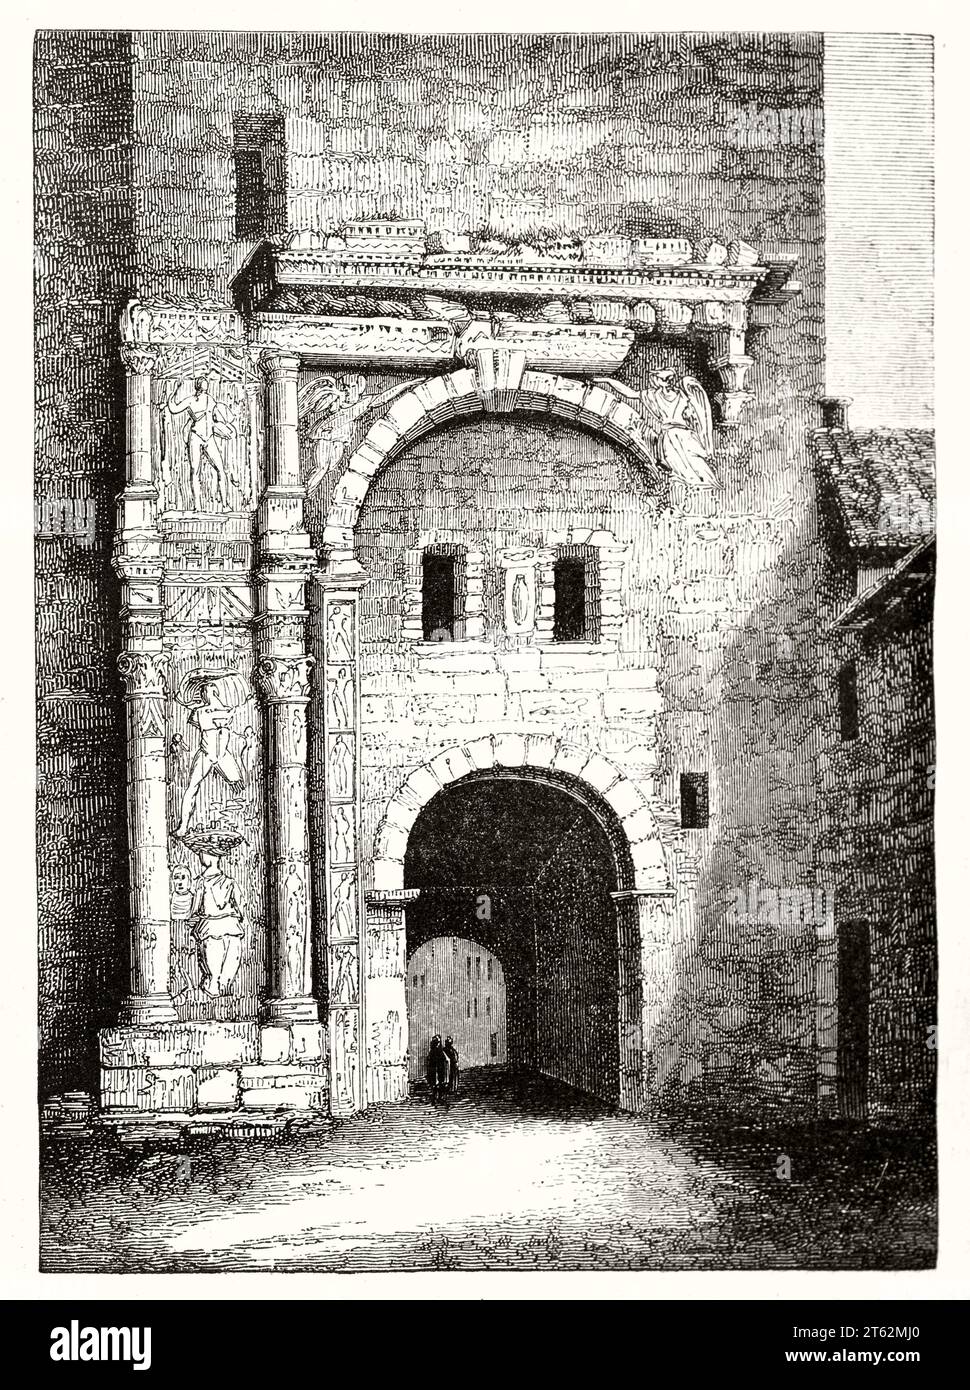 Alte Sicht auf das Schwarze Tor, Besancon, Frankreich. Vom unbekannten Autor, publ. Auf Magasin Pittoresque, Paris, 1849 Stockfoto